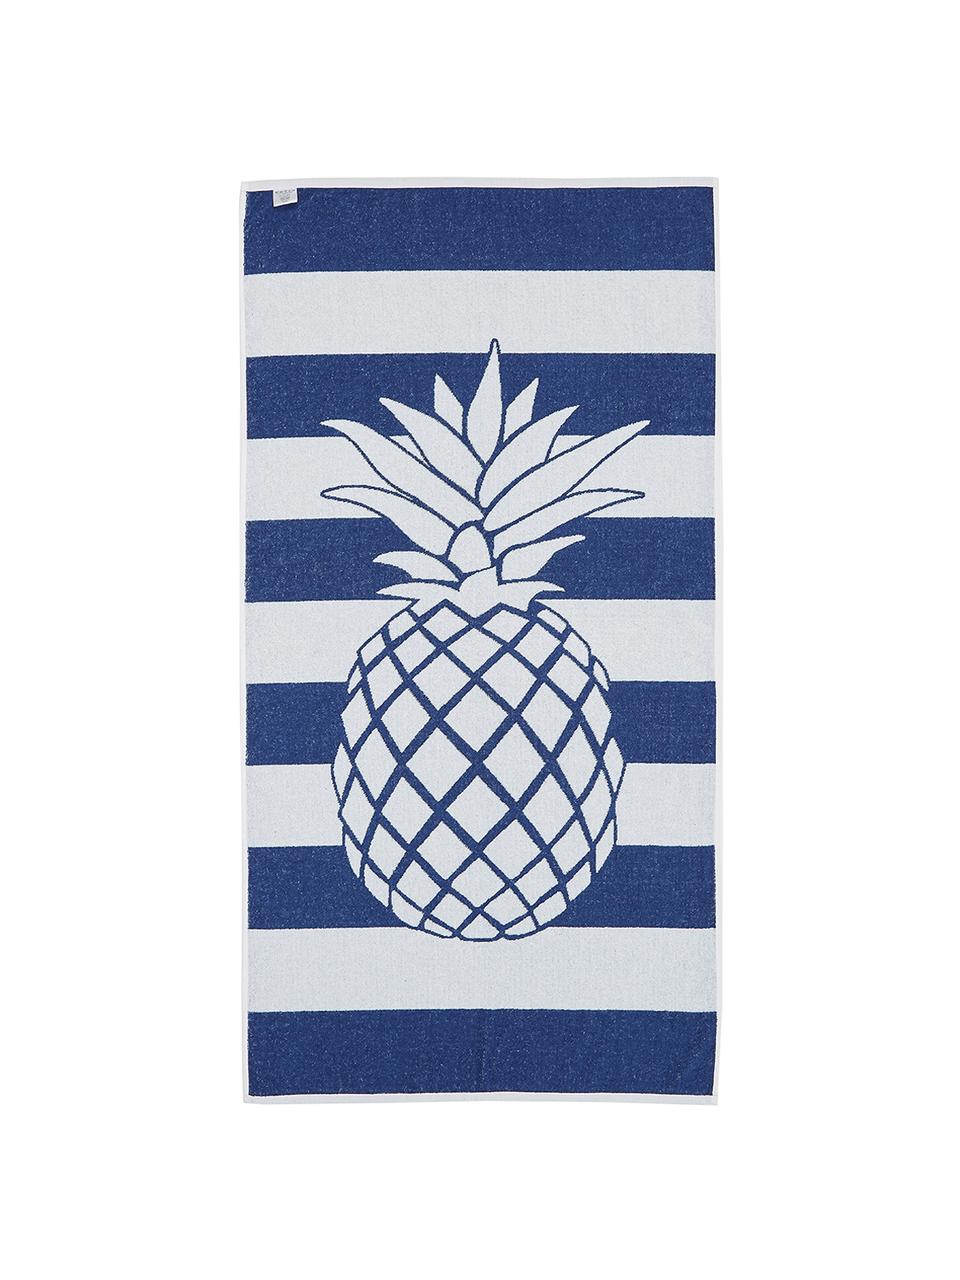 Gestreiftes Strandtuch Asan mit Ananas-Motiv, 100% Baumwolle
leichte Qualität 380 g/m², Blau, Weiss, 80 x 160 cm